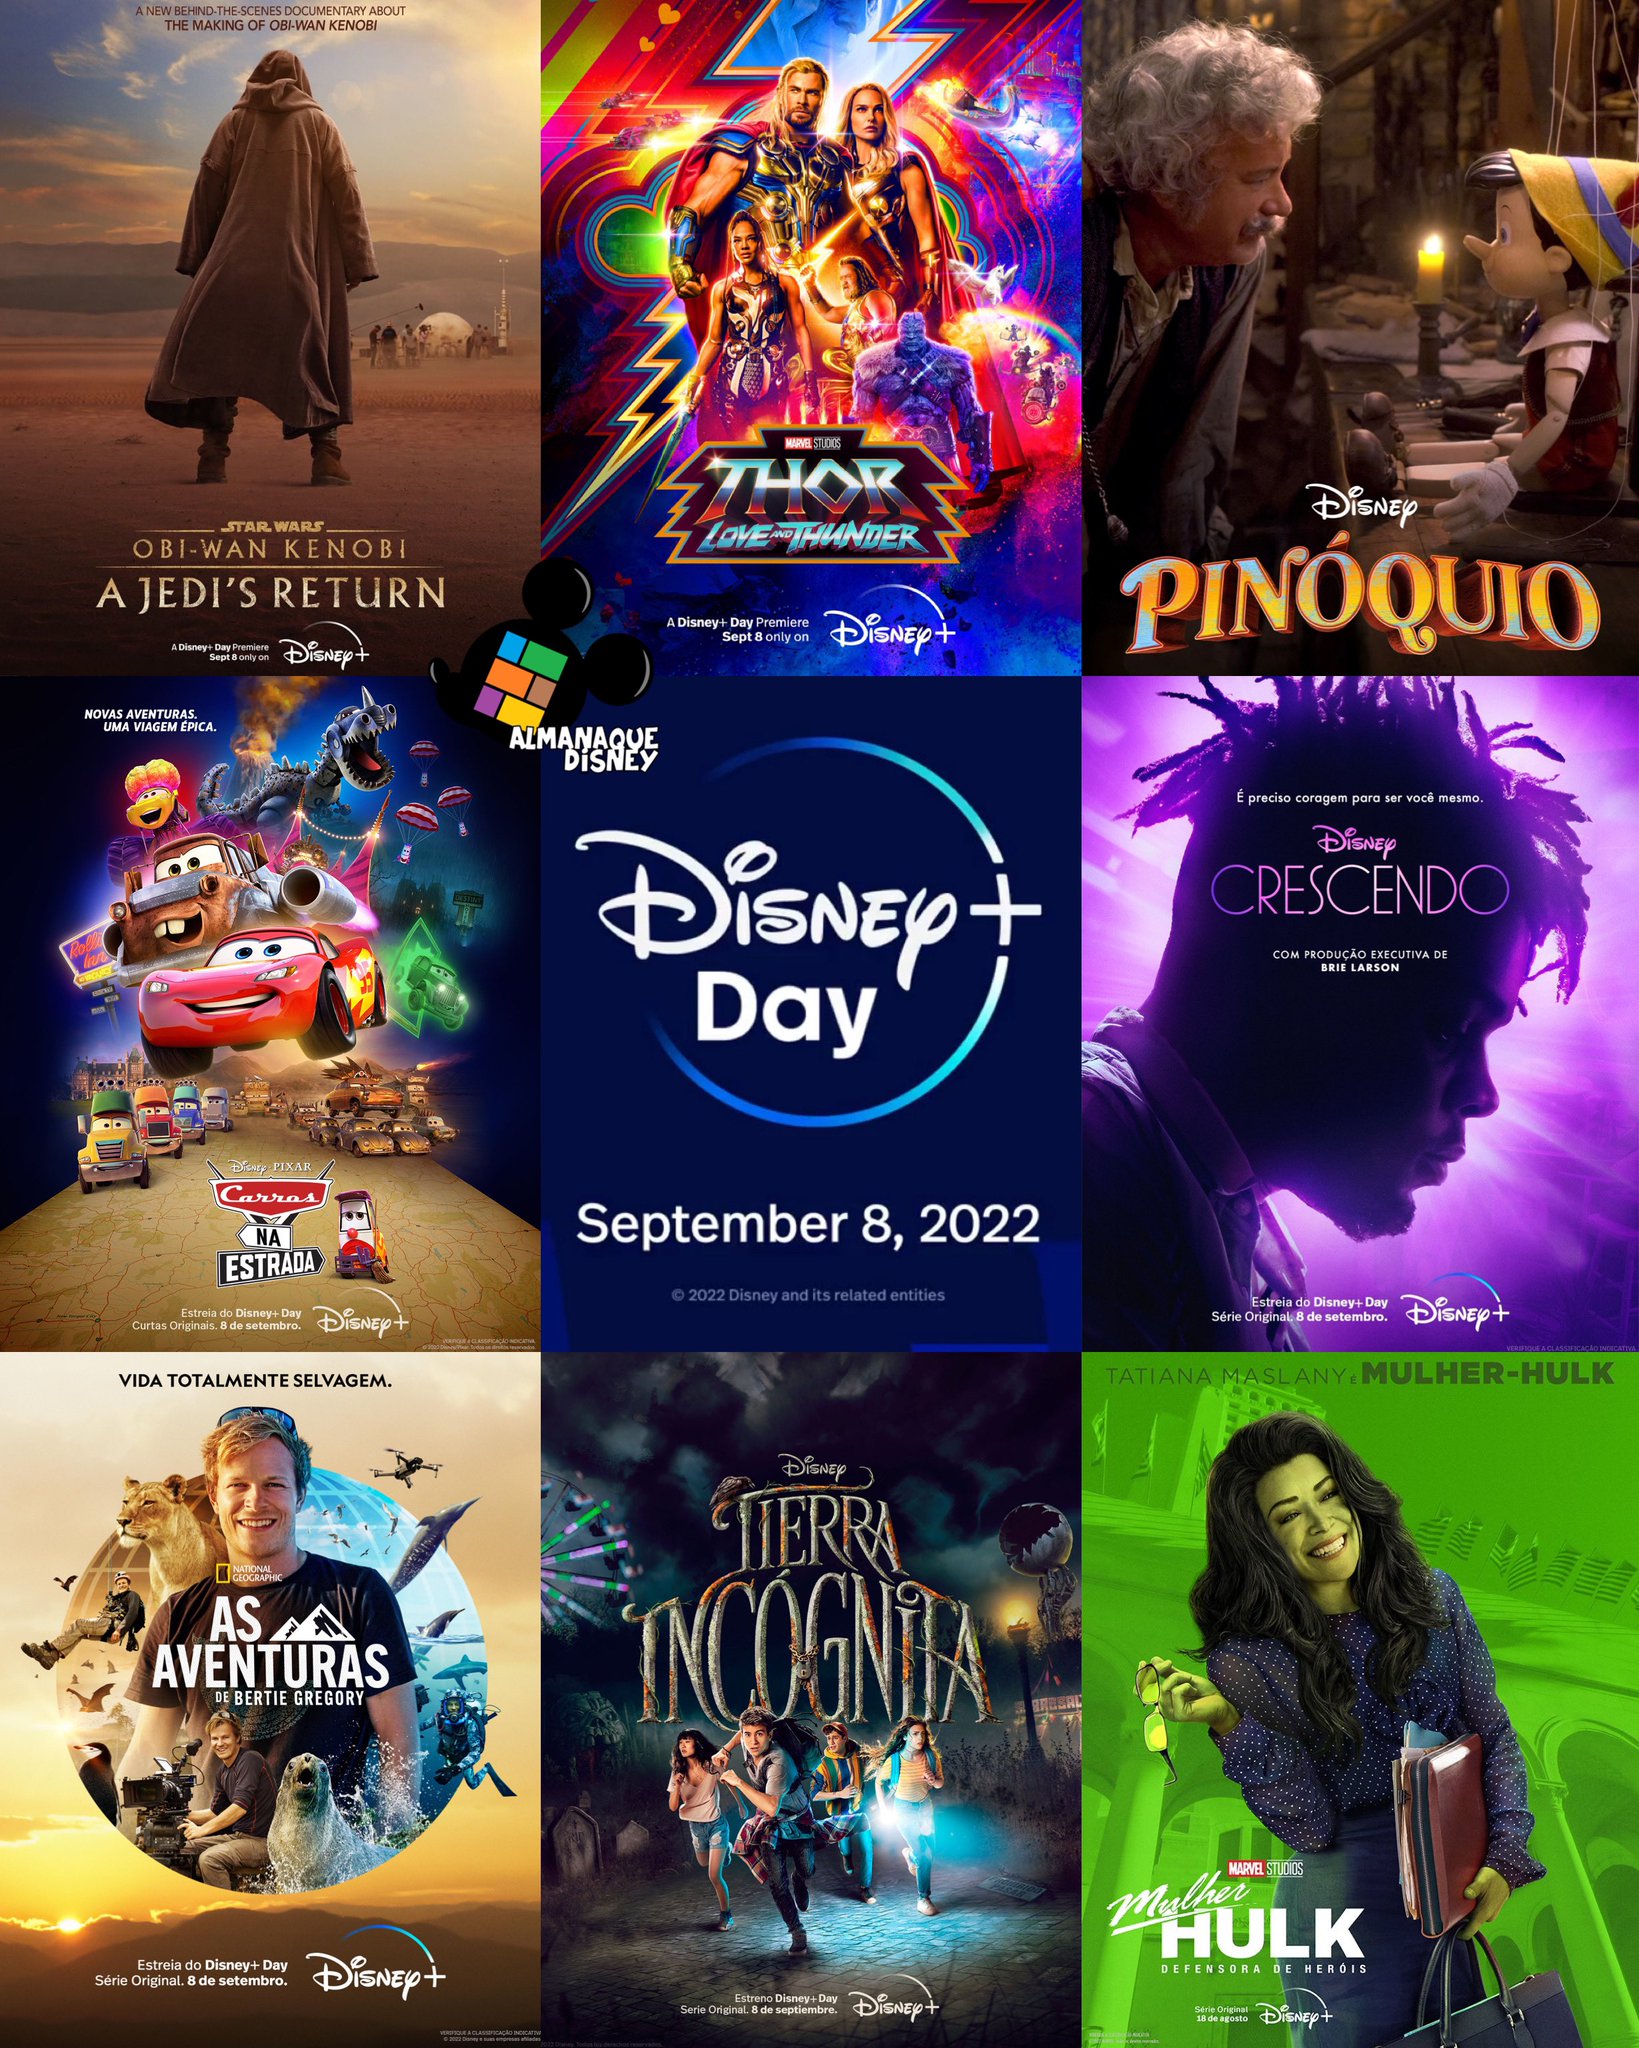 Almanaque Disney on X: A Disney divulgou o cronograma de lançamento dos  episódios de 'Andor'. A série estreia com três episódios em 21/09 e segue  semanalmente até 23/11. Serão 12 episódios na